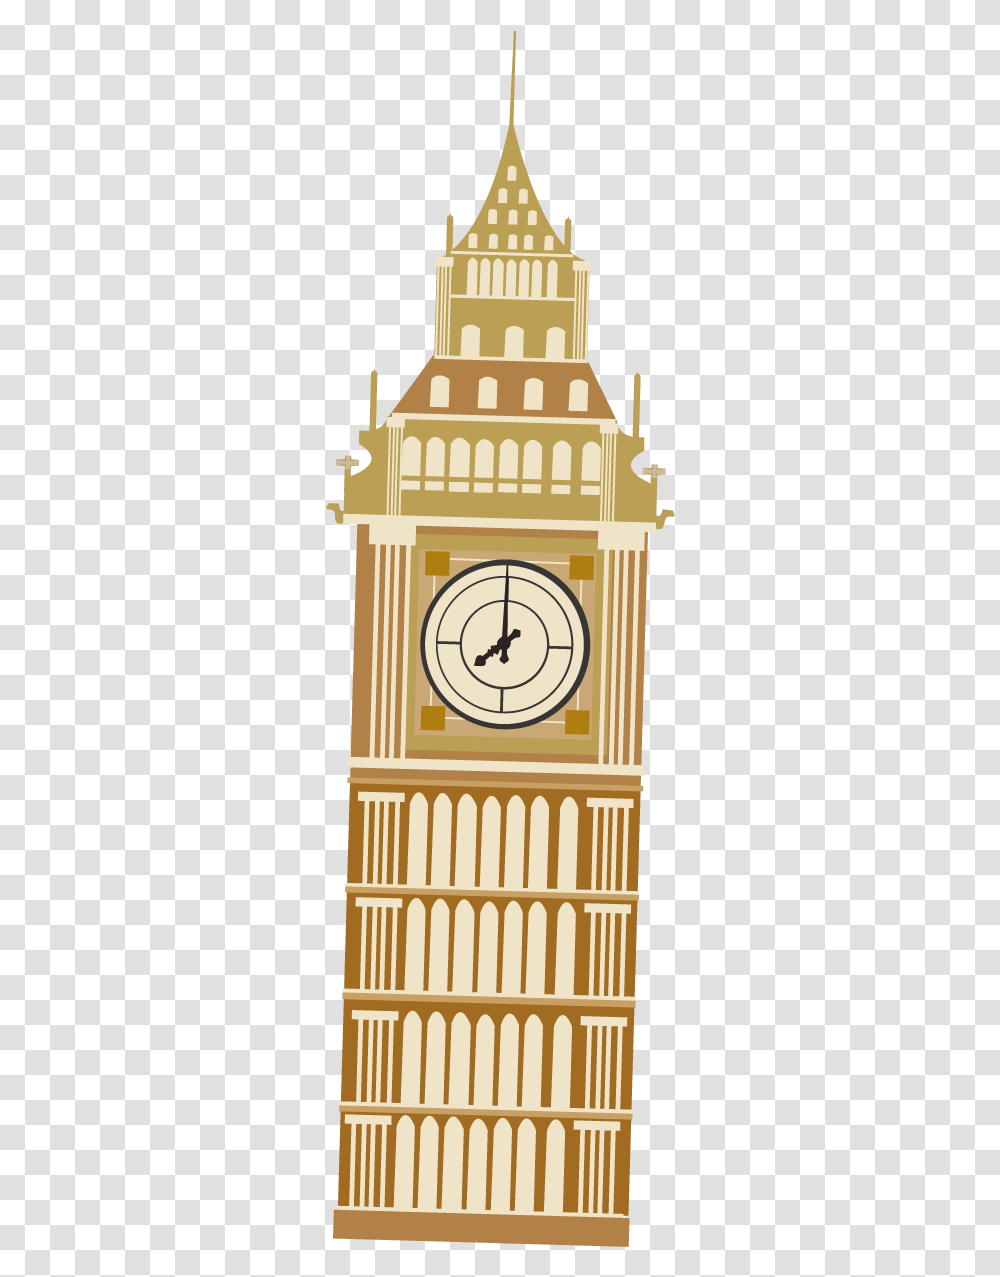 Big Ben Drawing Cartoon Cartoon Clock Tower Big Ben, Analog Clock, Architecture, Building, Pillar Transparent Png